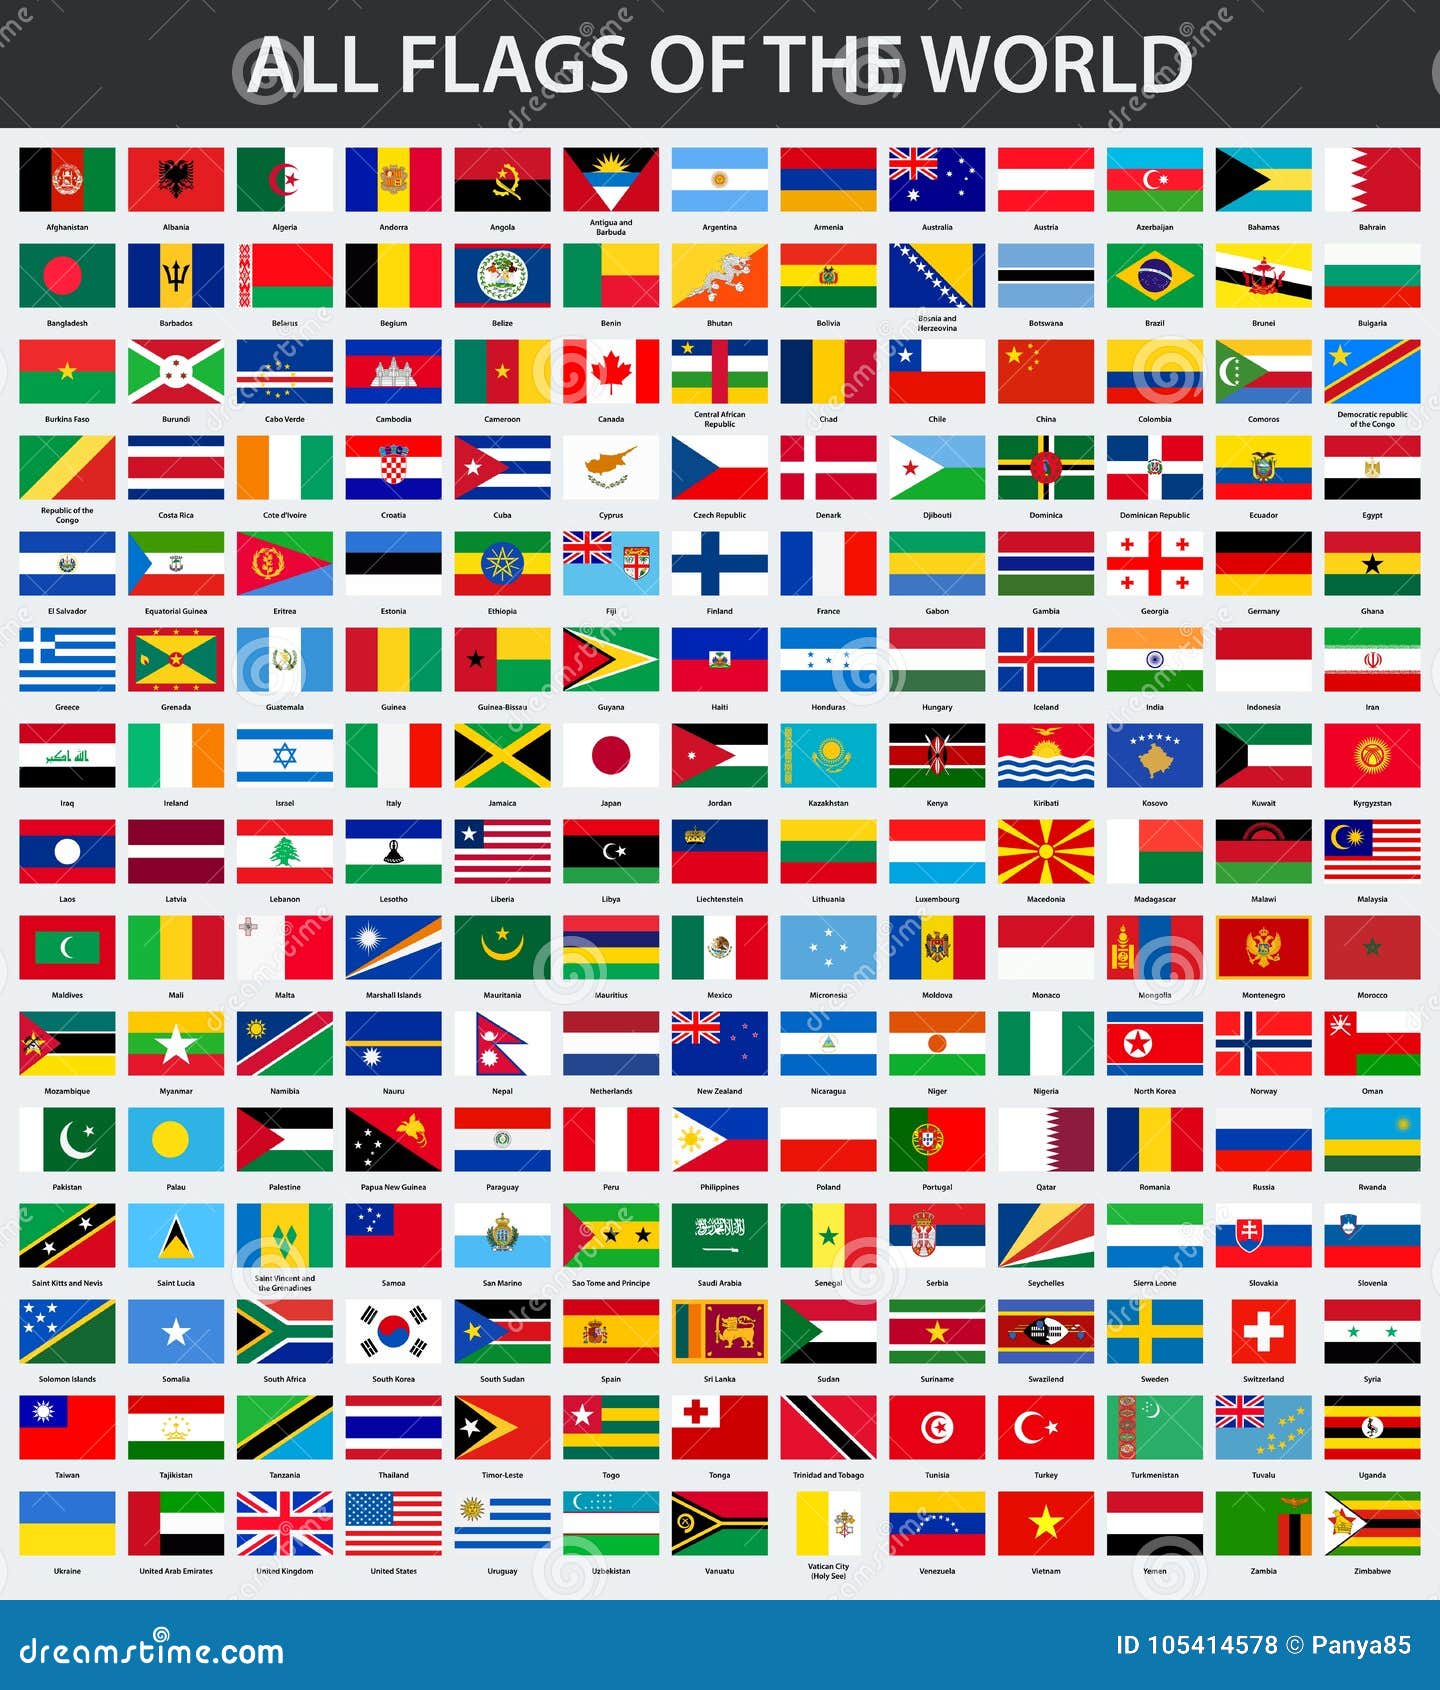 les drapeaux du monde